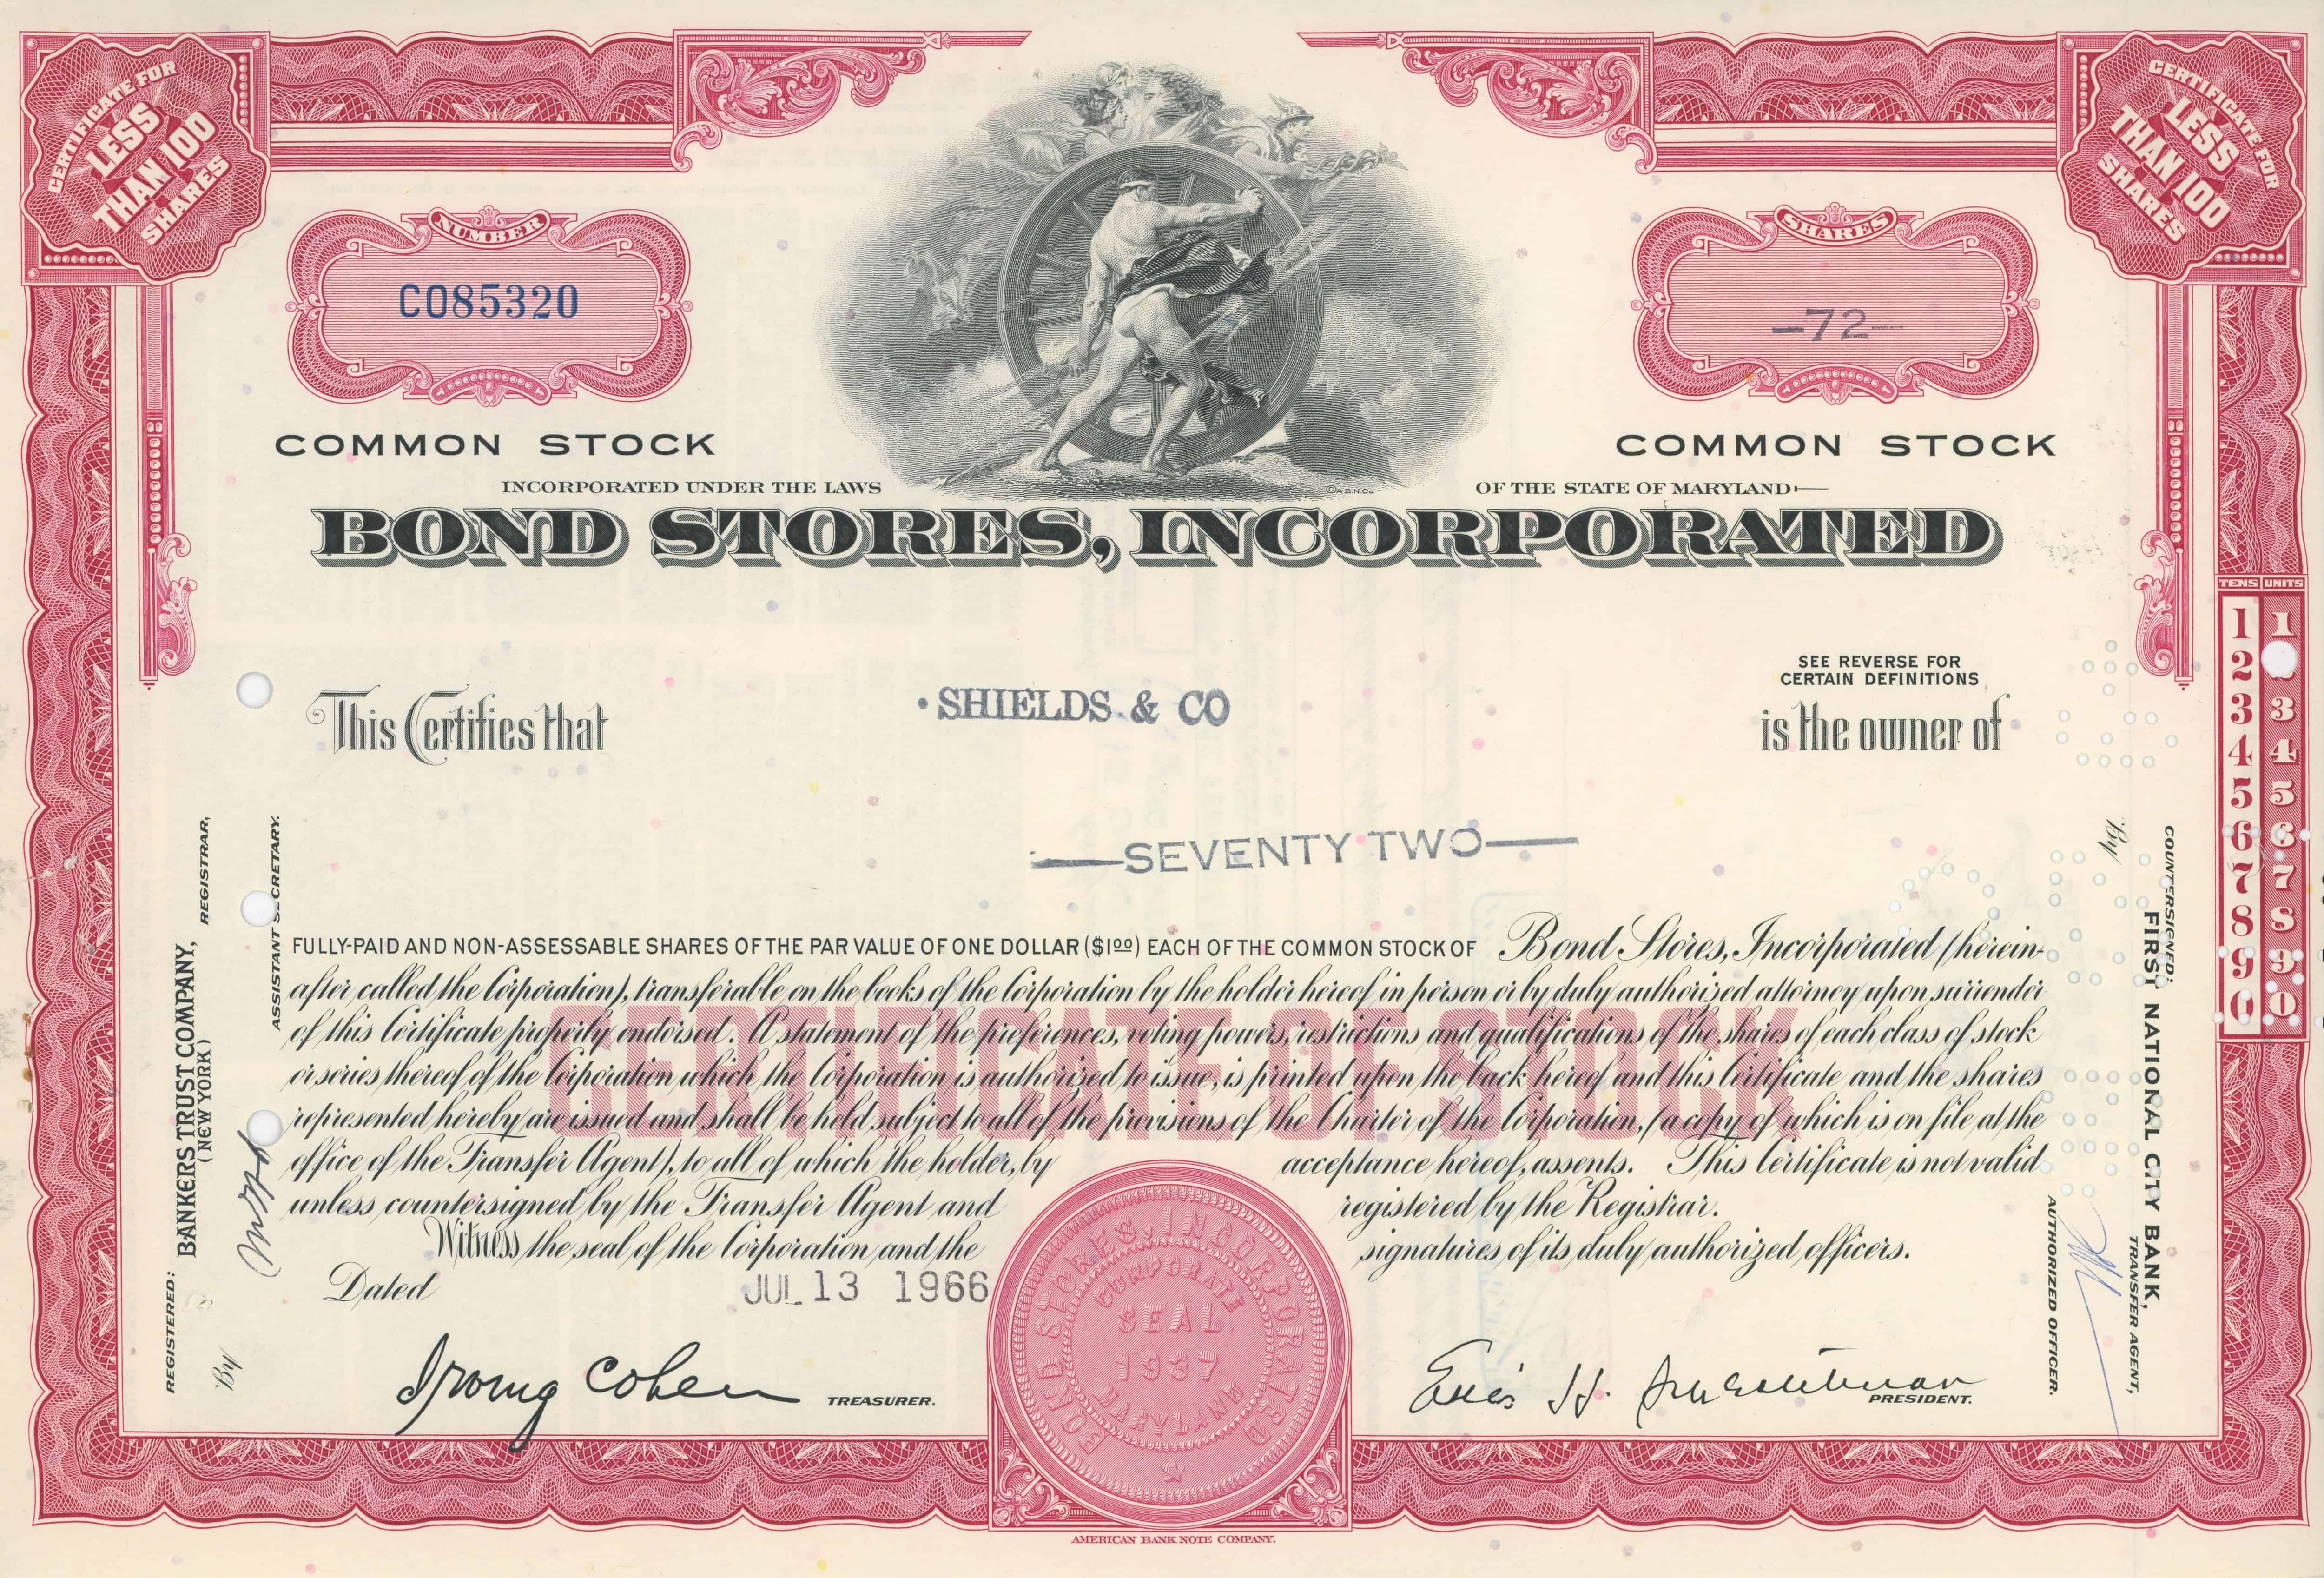 72 akcje Bond Stores, Incorporated z dnia 13 lipca 1966 roku.